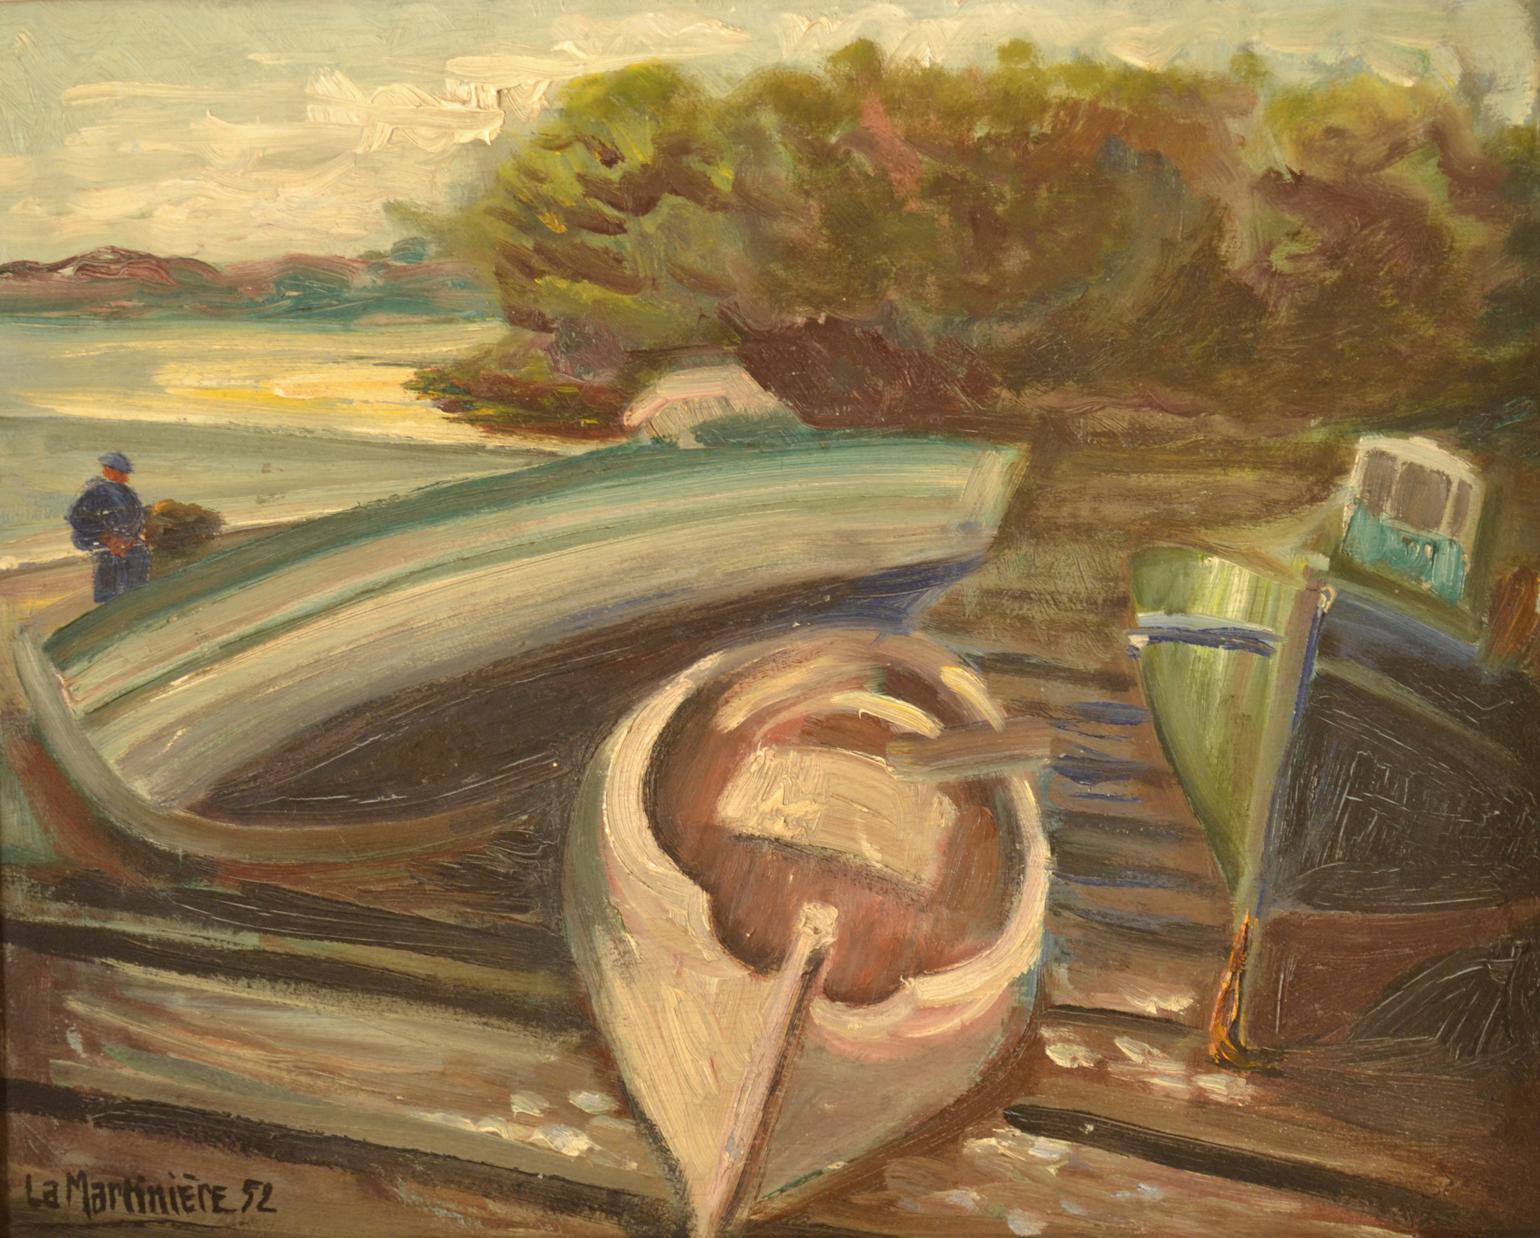 Peinture à l'huile expressive sur panneau de bois français de La Martiniere en 1952. La peinture représente des pêcheurs et leurs bateaux.
Le tableau sans cadre mesure 41 x 33 cm et se trouve dans son cadre d'origine.
 
    